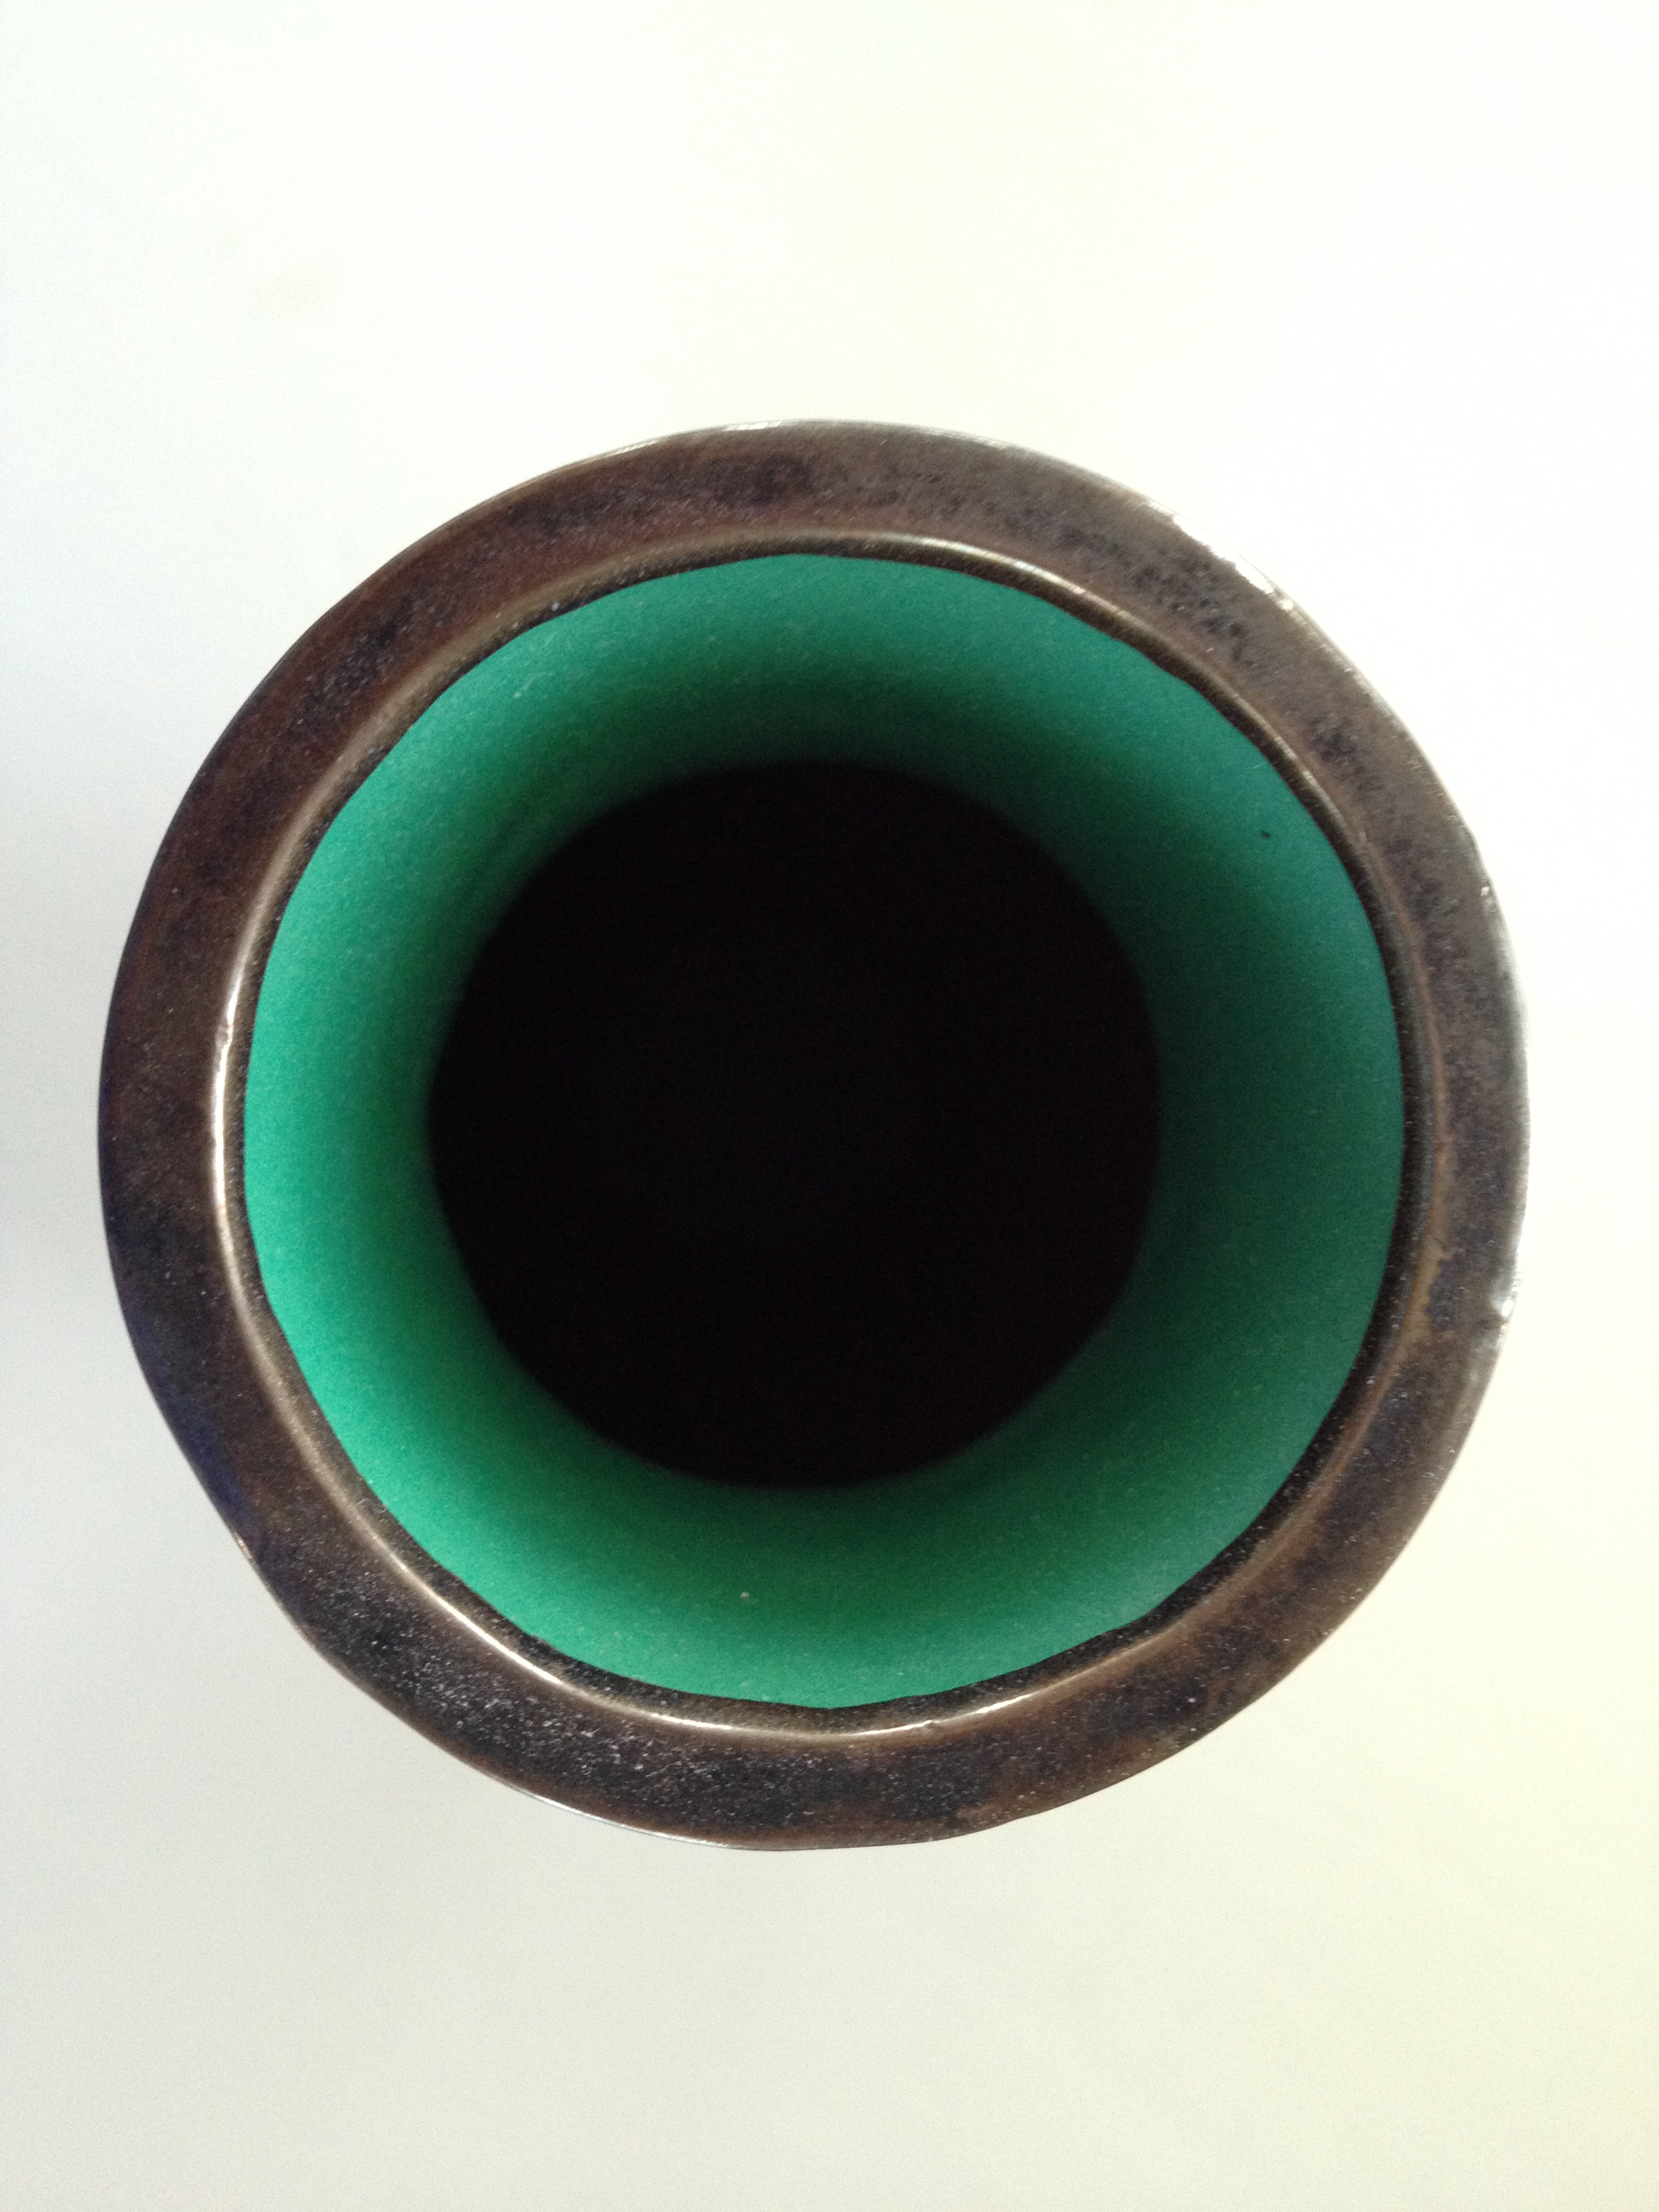 Green Vase - Top View, Metal Rim